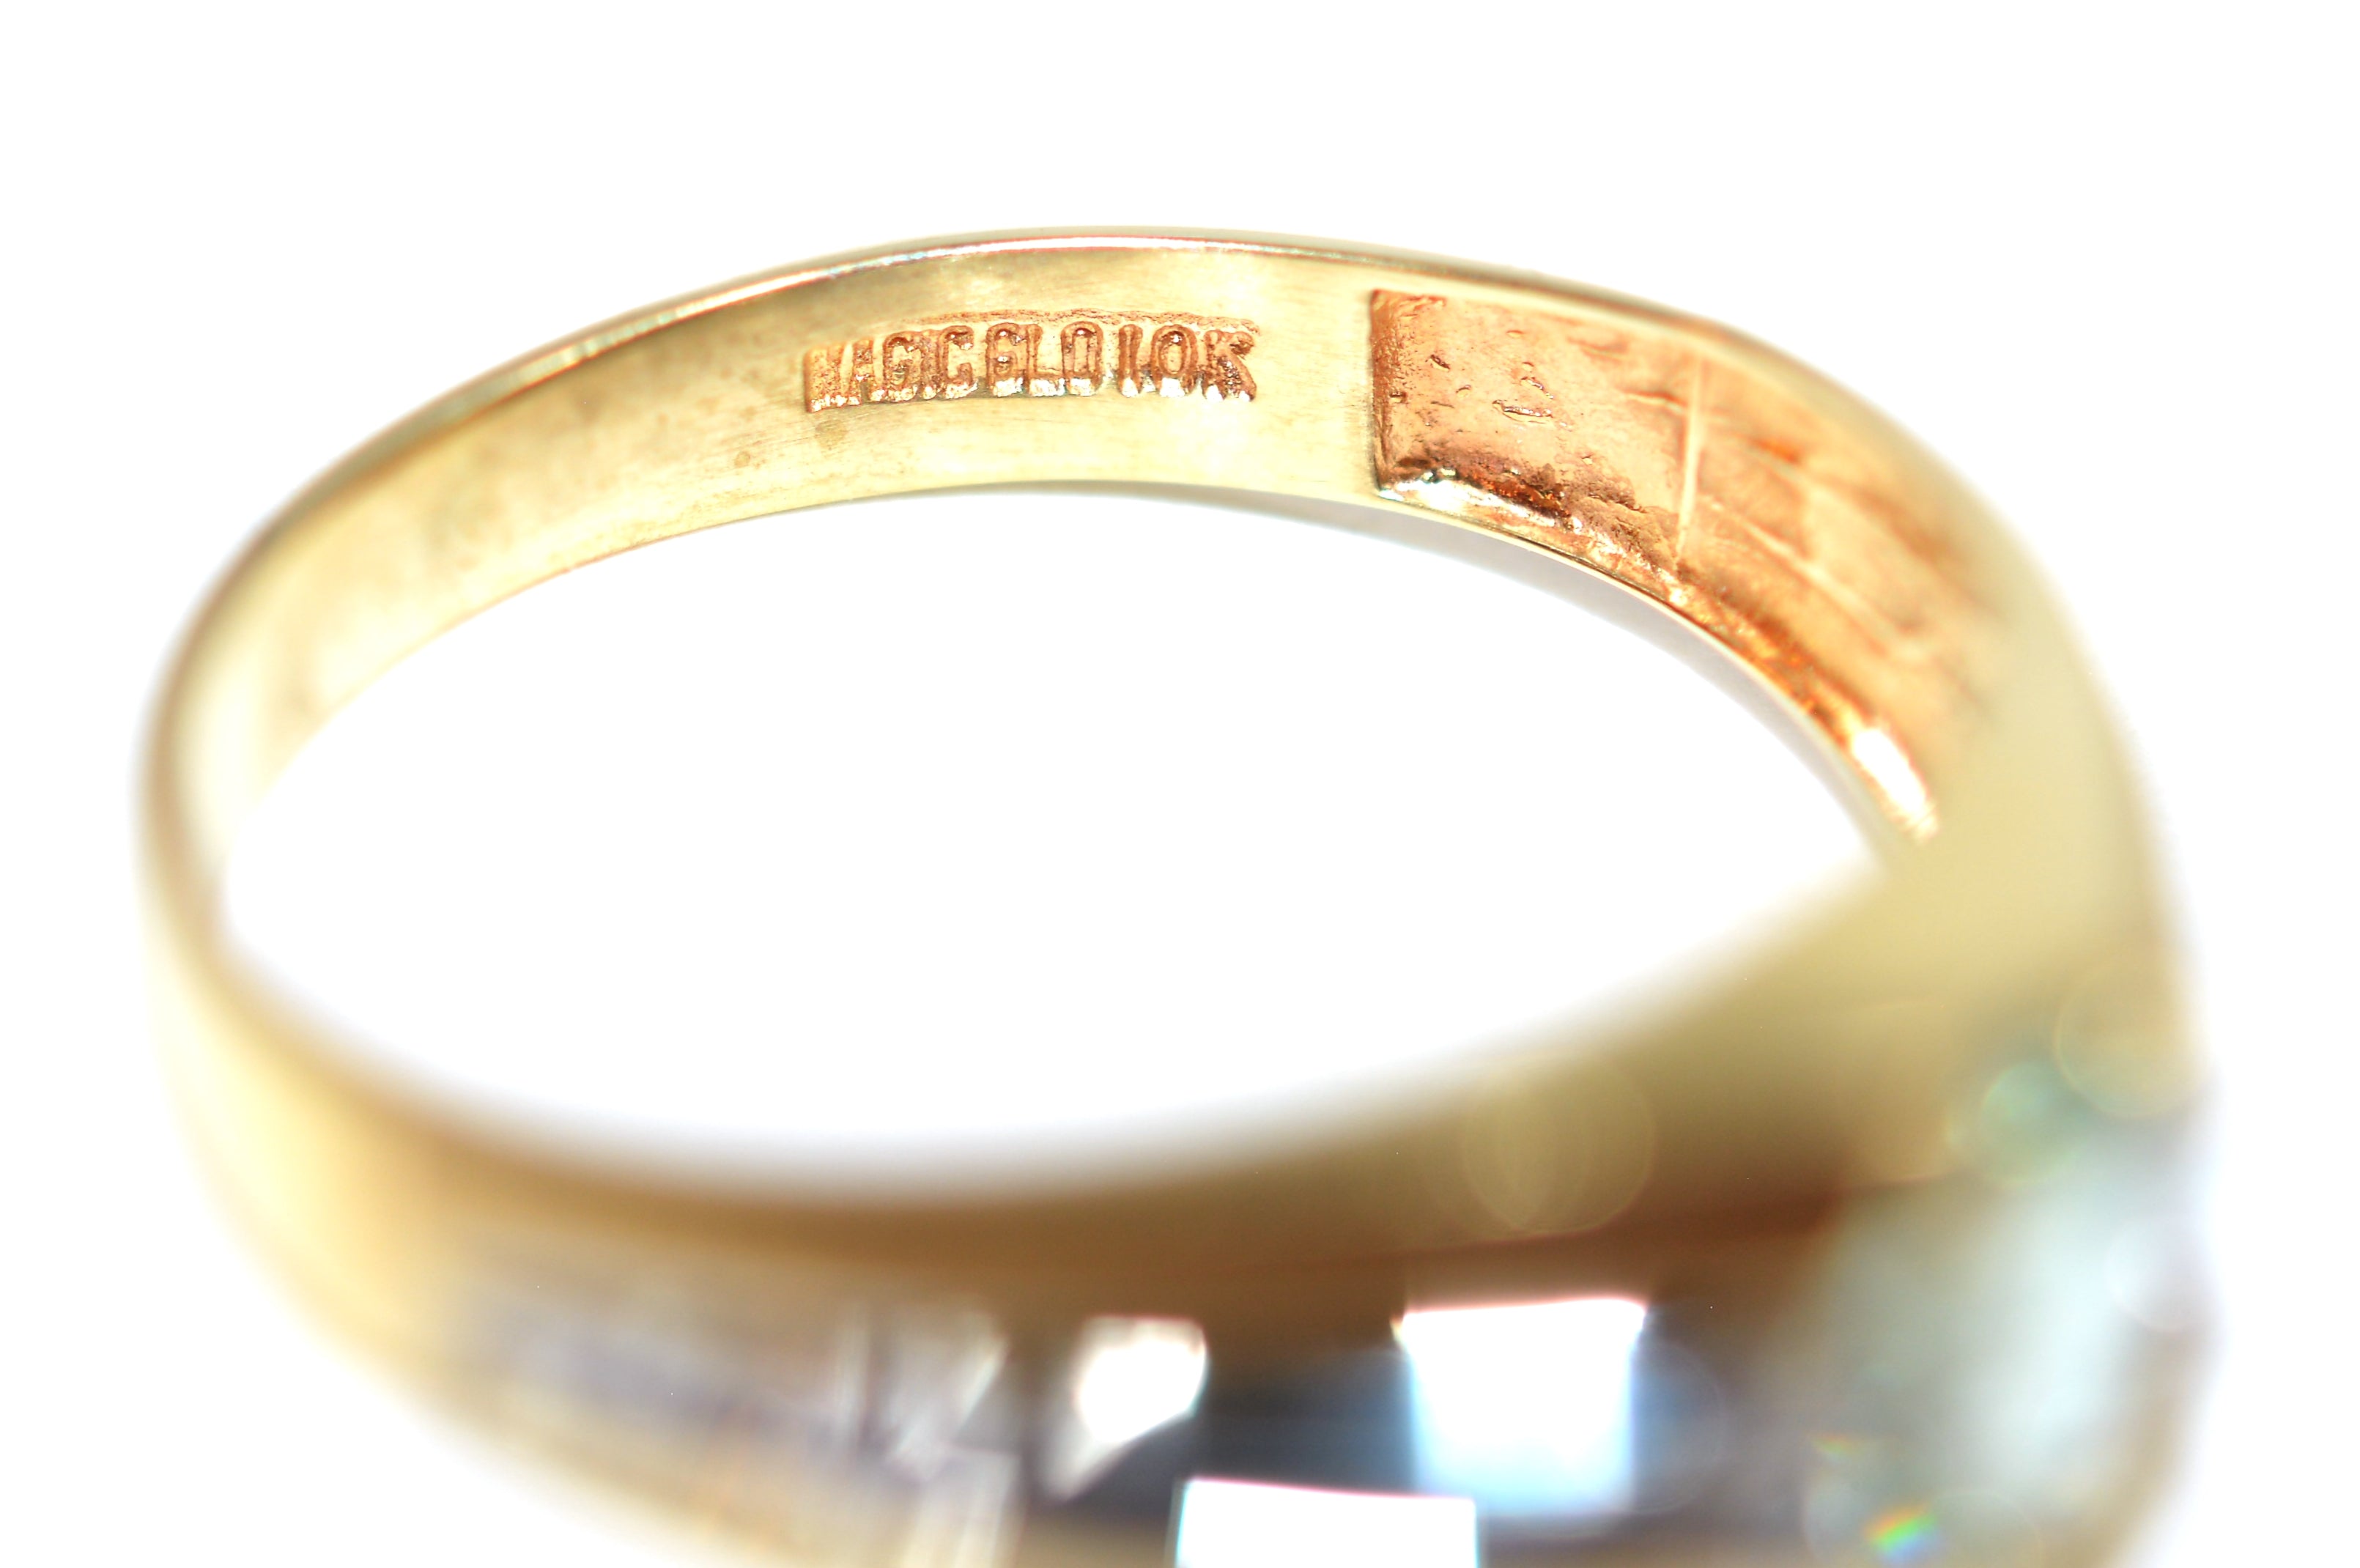 Natural Paraiba Tourmaline & Diamond Ring 10K Solid Gold .80tcw Men's Ring Gemstone Ring Birthstone Ring Statement Ring Cocktail Ring Estate